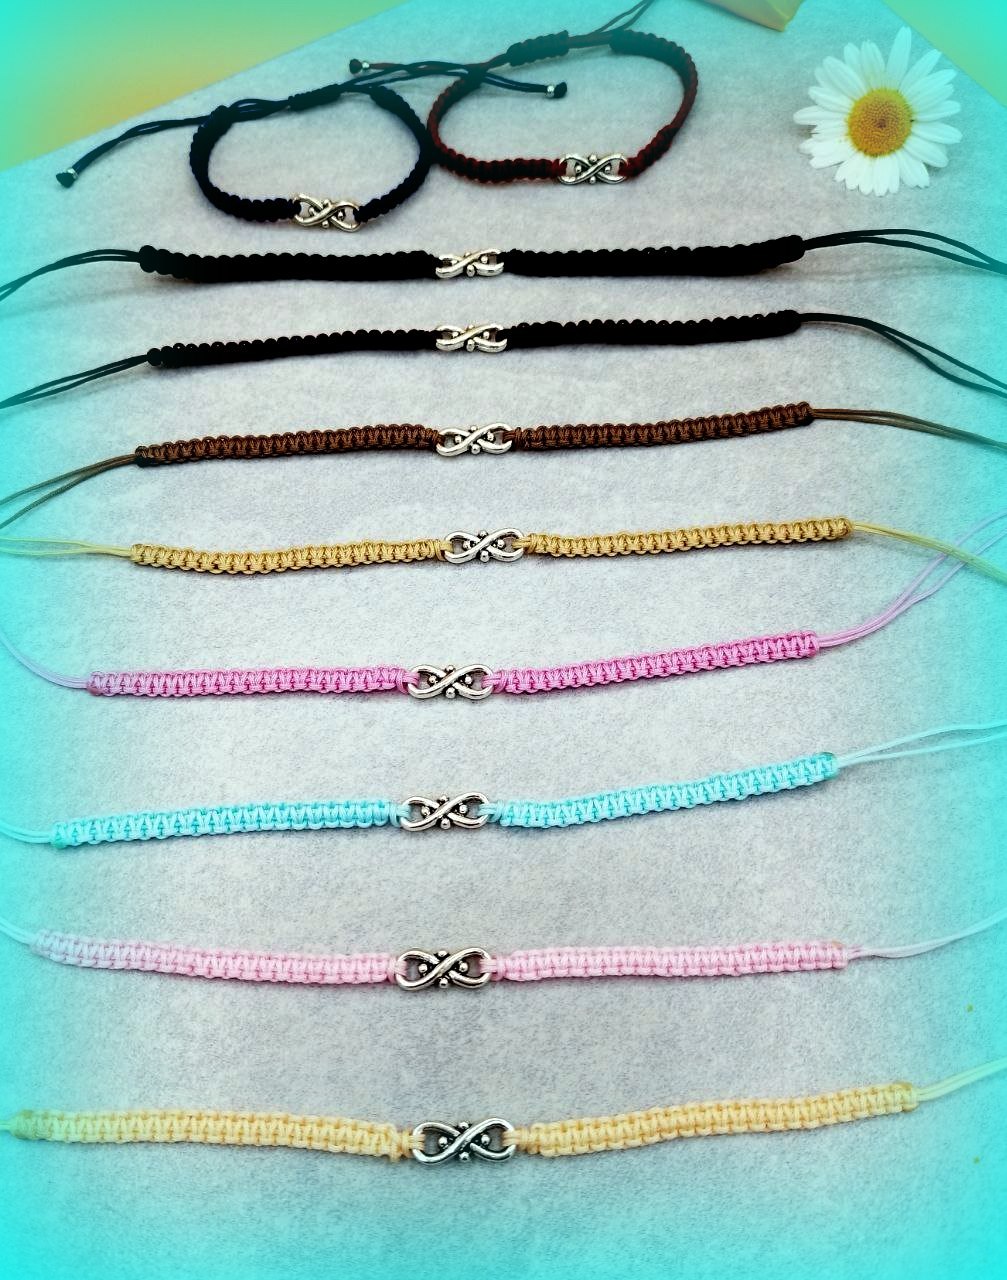 Traumhaft schöne Makramee Armbänder in Pastellfarben mit Infinity Symbol 8